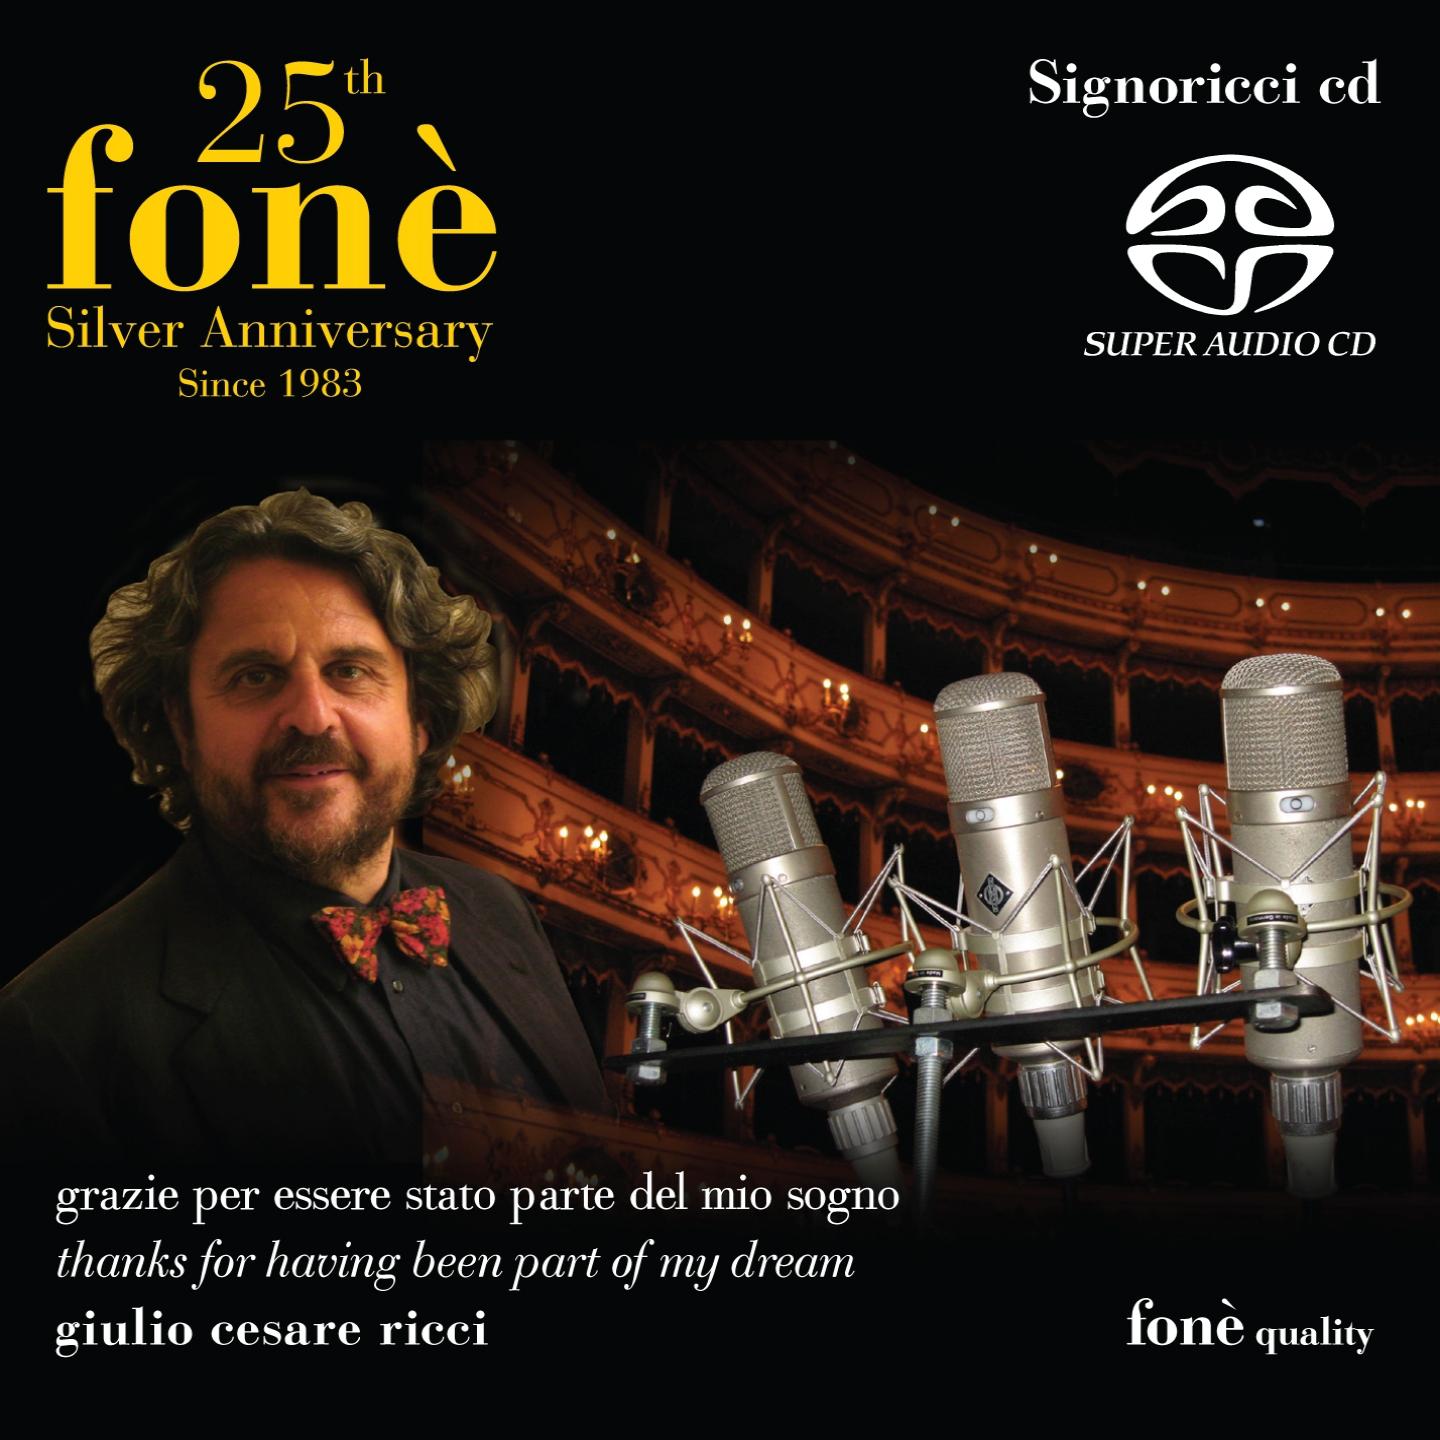 25th fone Silver Anniversary